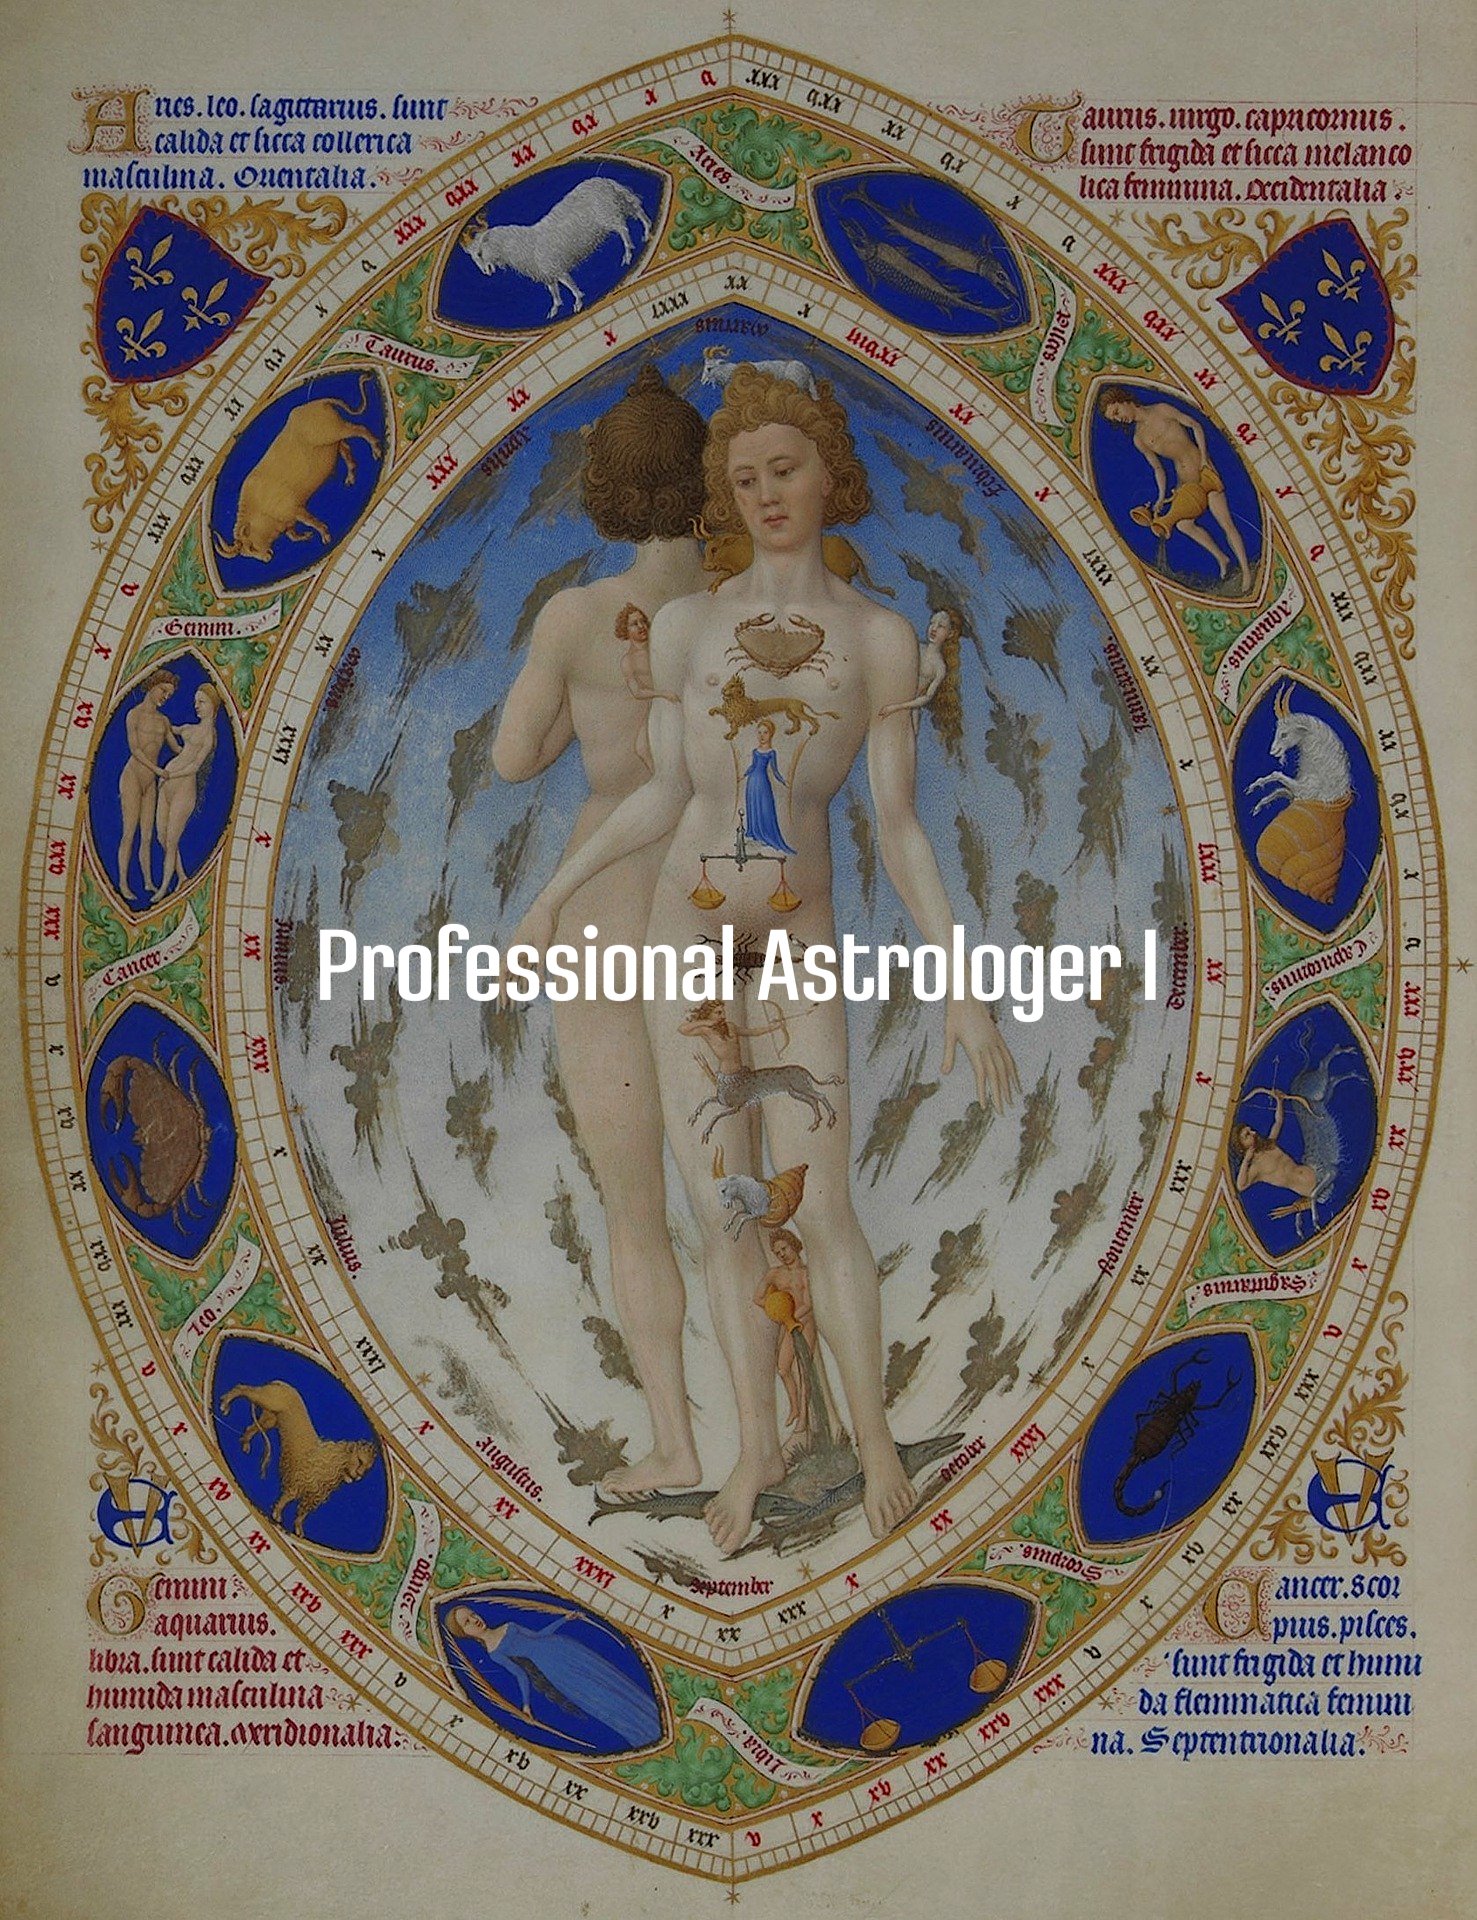 Professional Astrologer I. Символический язык и системы координат в астрологии Нового времени. Планеты, знаки зодиака и дома в астрологии